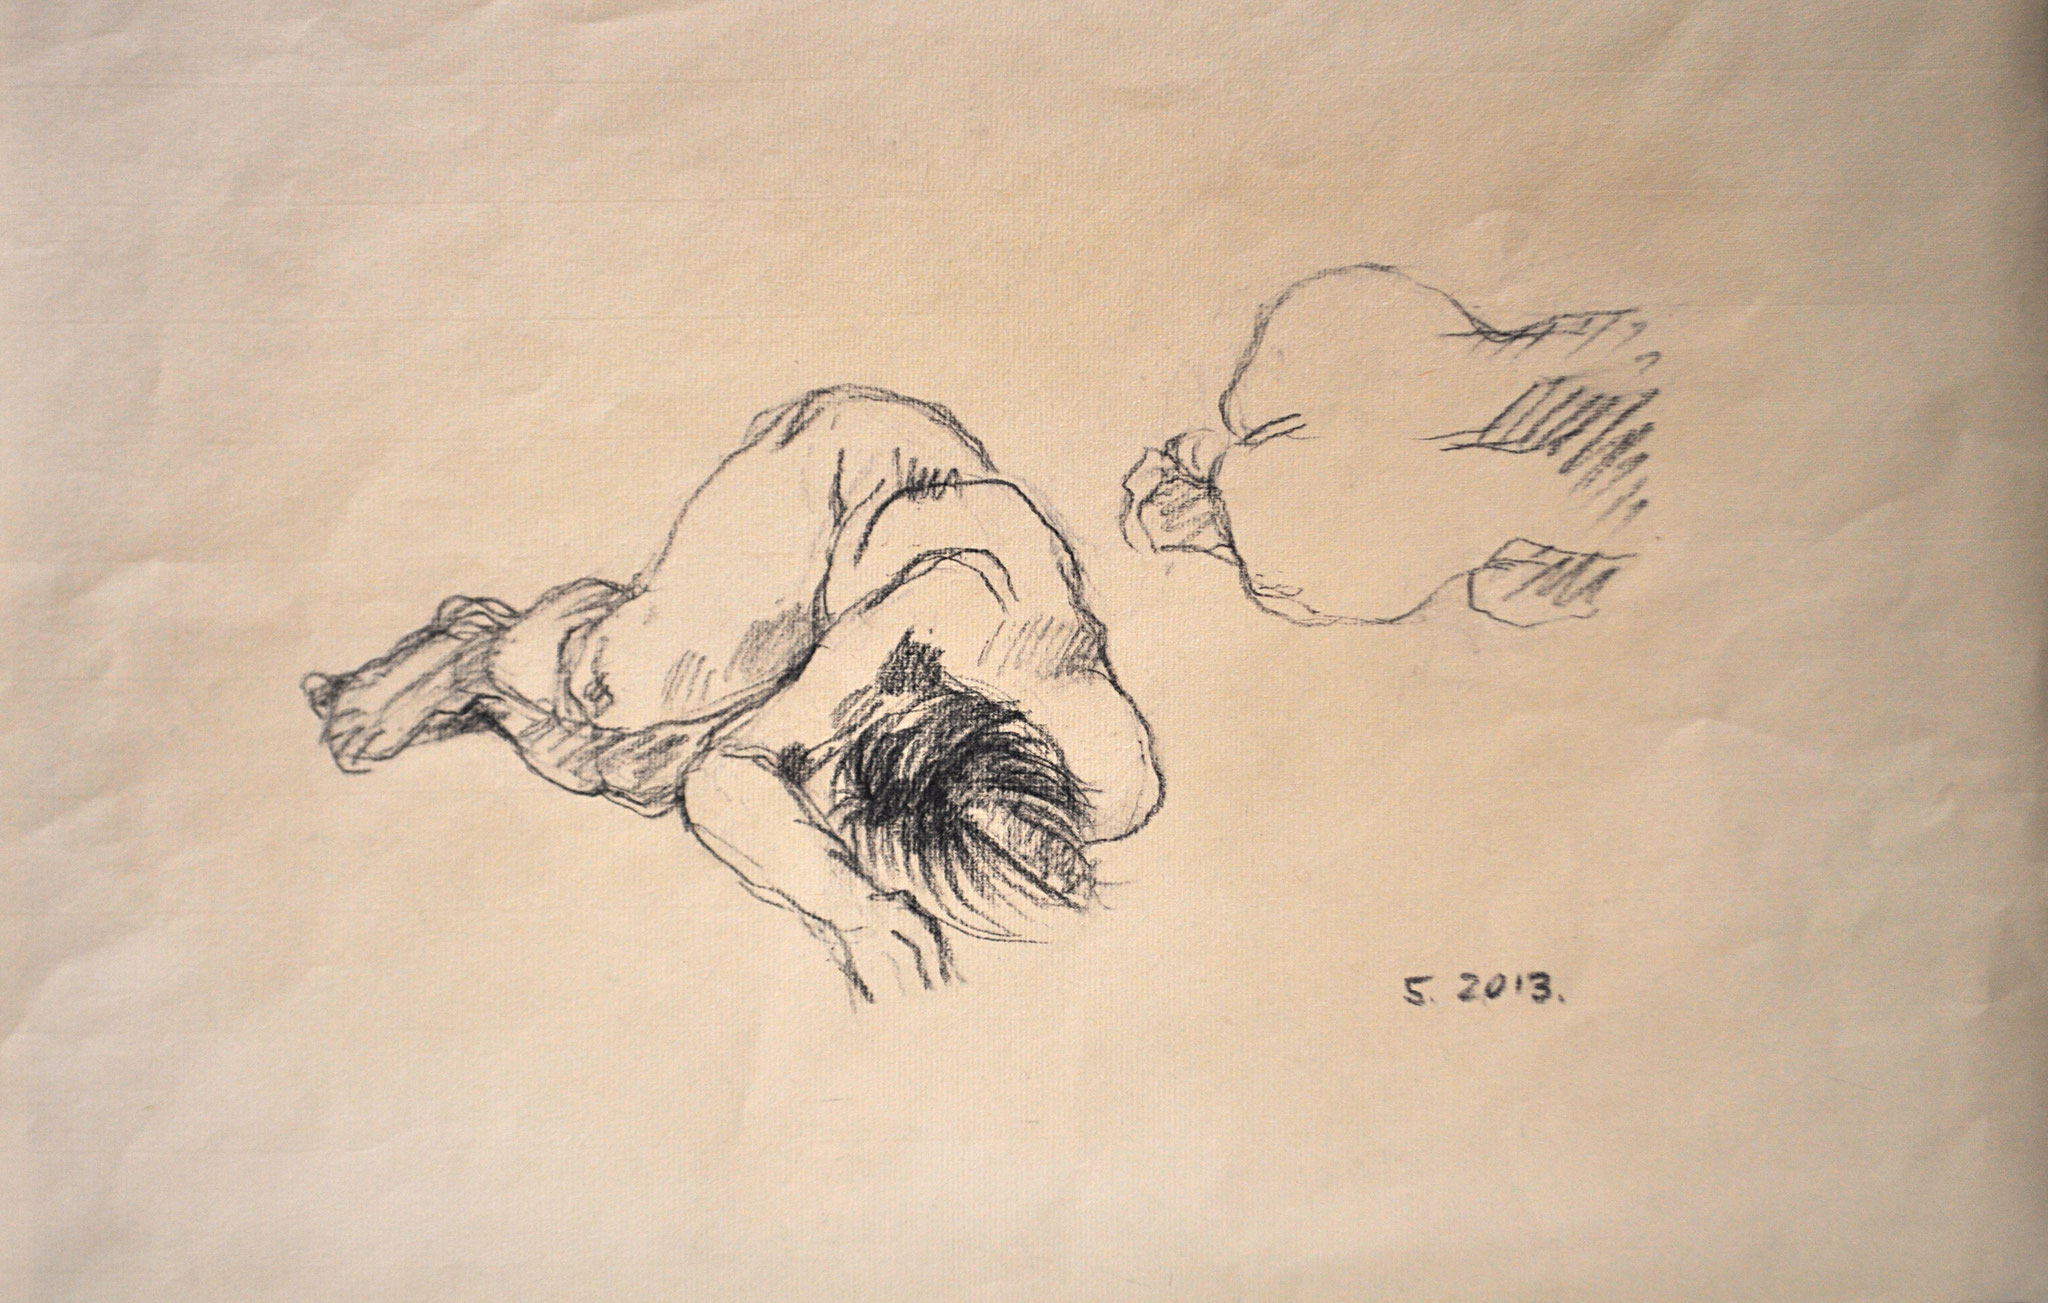 Liegender Akt mit Spiegelung. Kohlezeichnung auf getöntem Ingrespapier, 2013. Format: 41 x 27 cm 